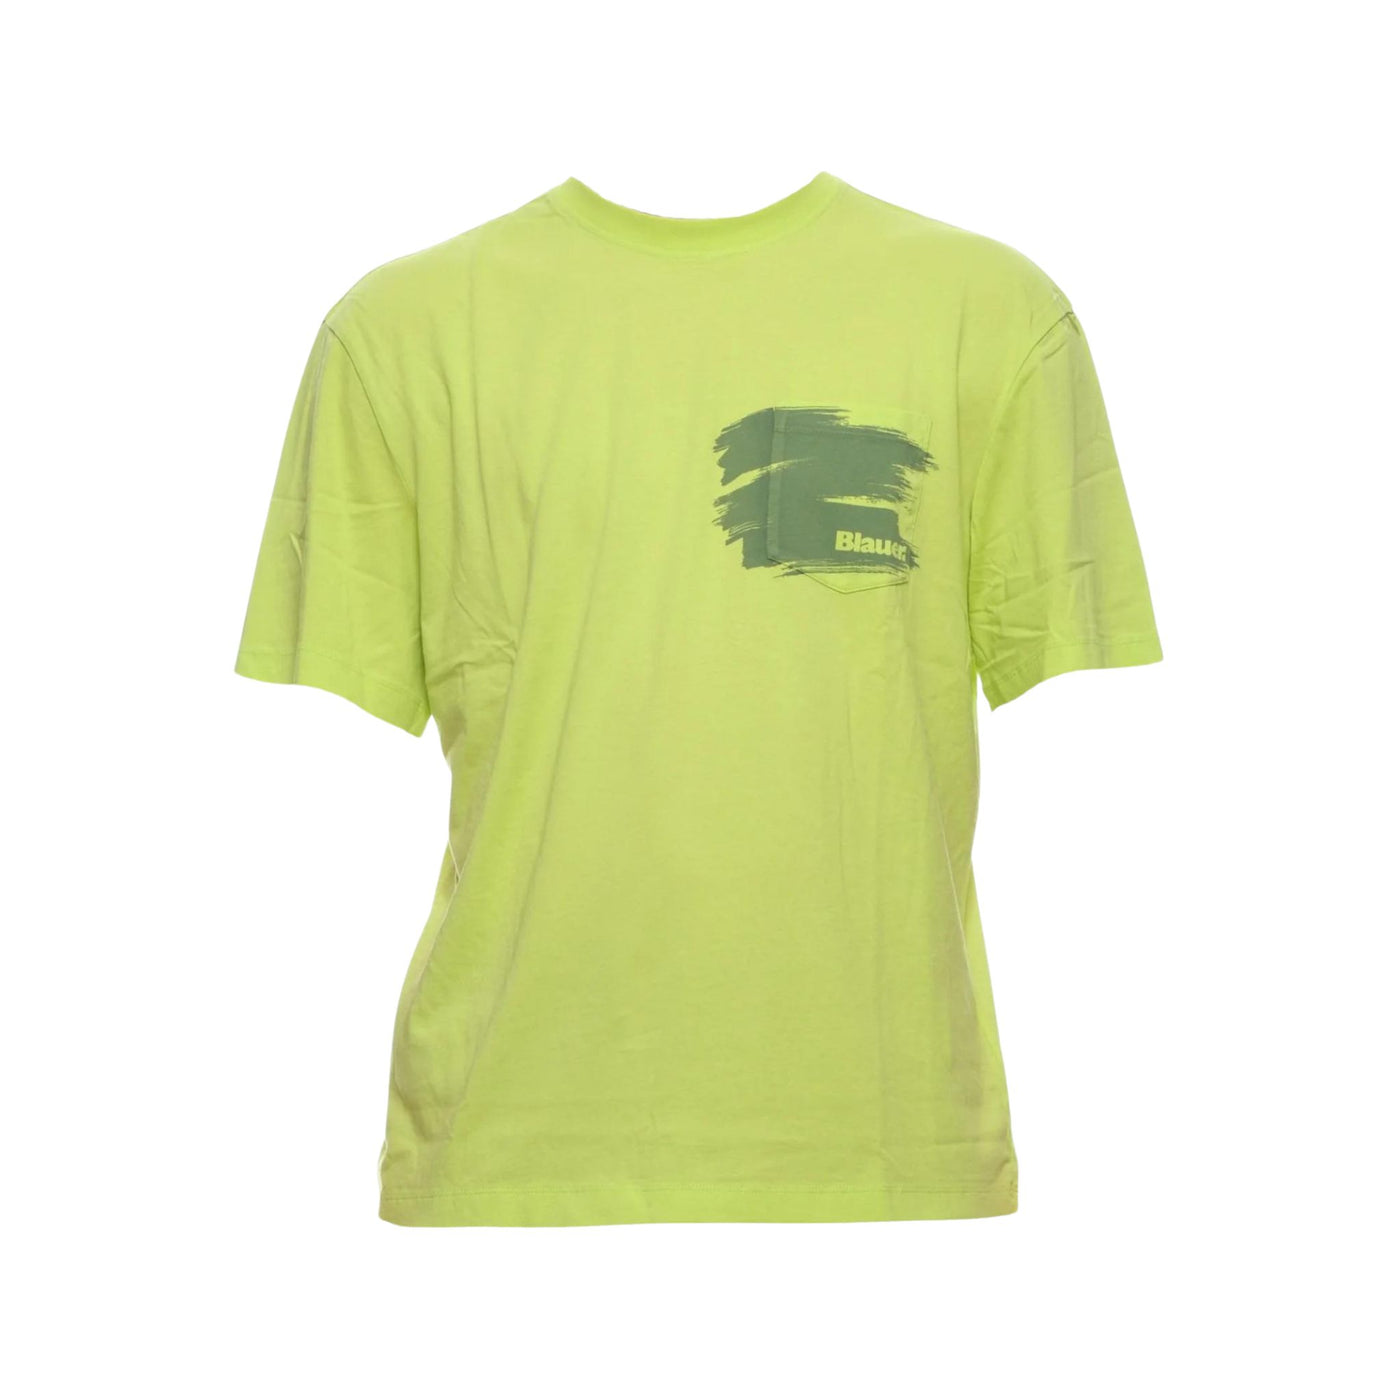 T-shirt Uomo con Tasca sul petto verde fluo